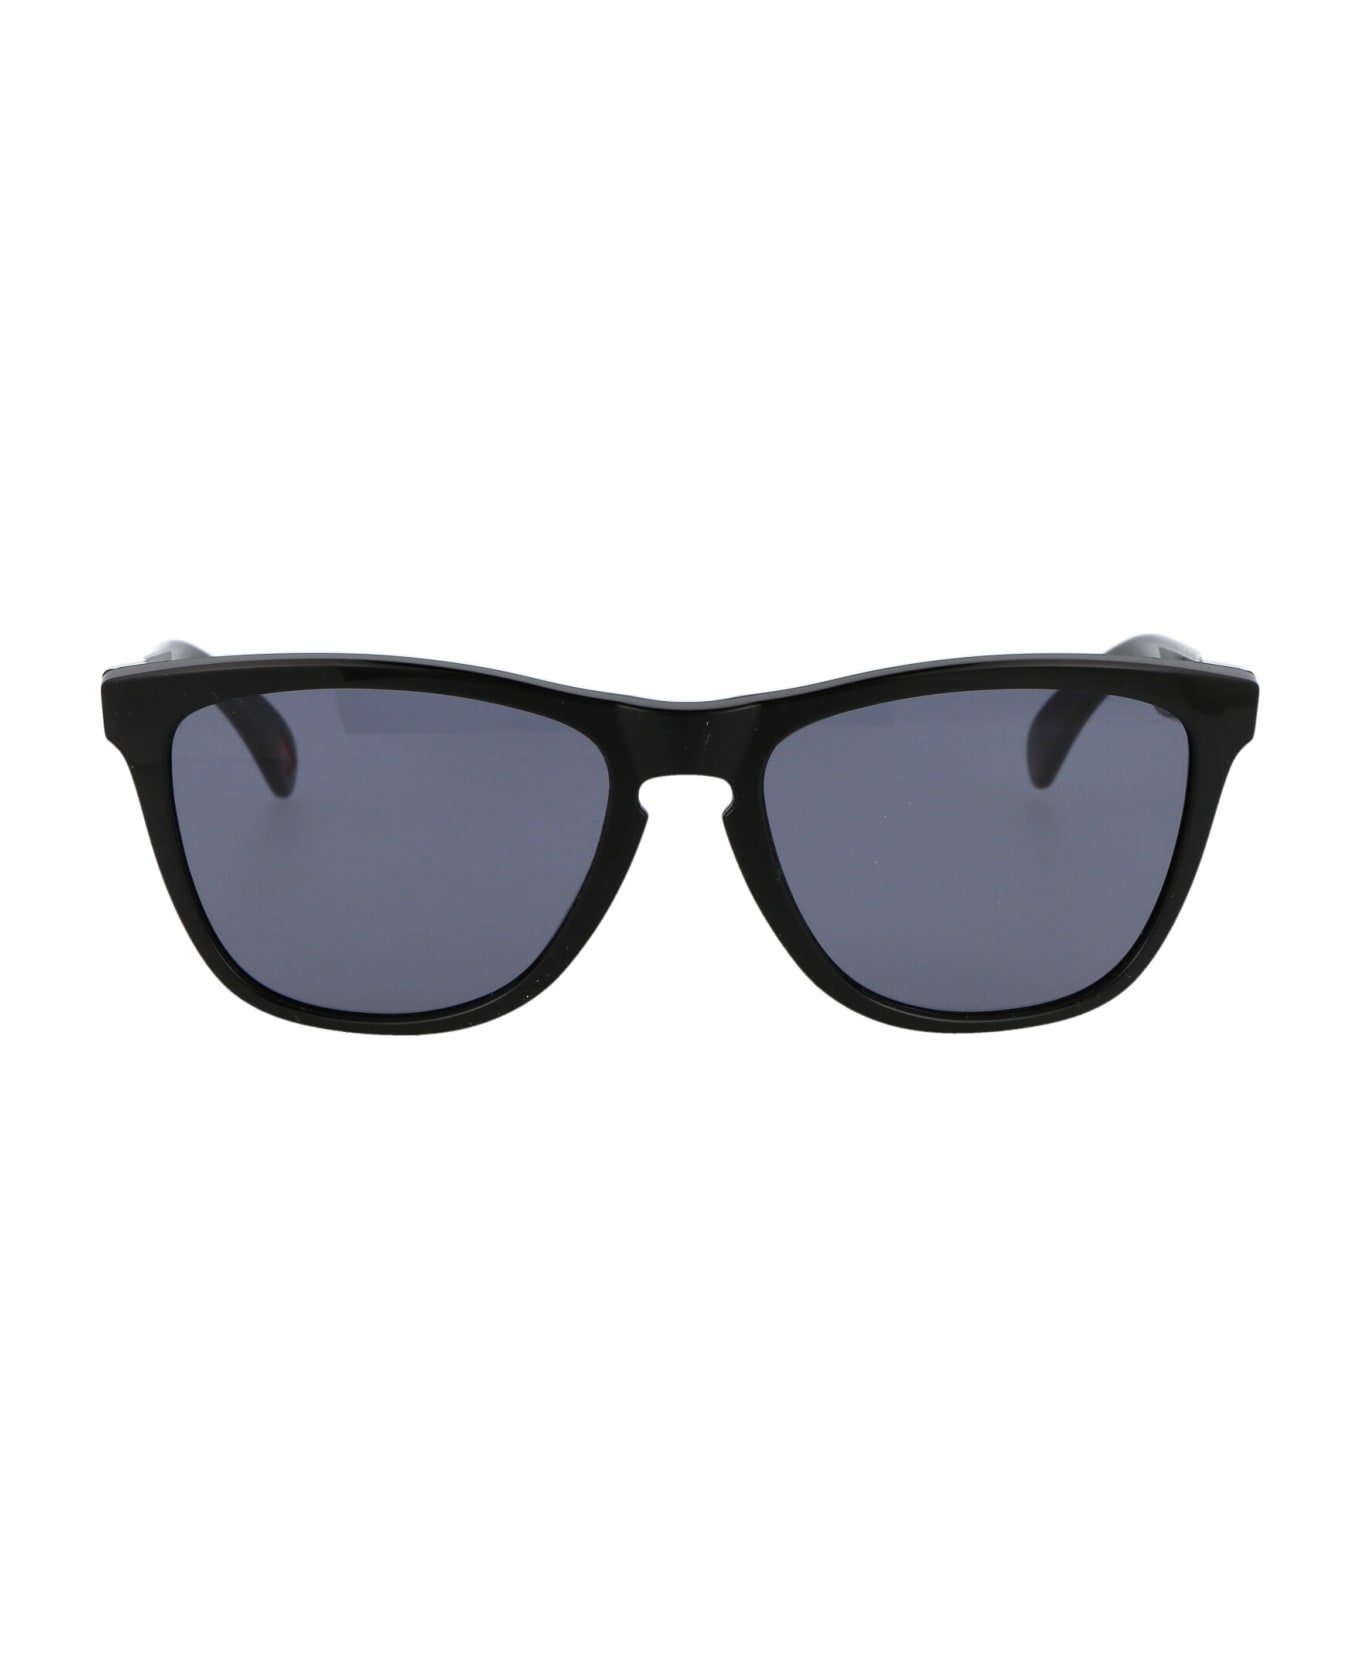 Oakley Frogskins Sunglasses - 24-306 POLISHED BLACK